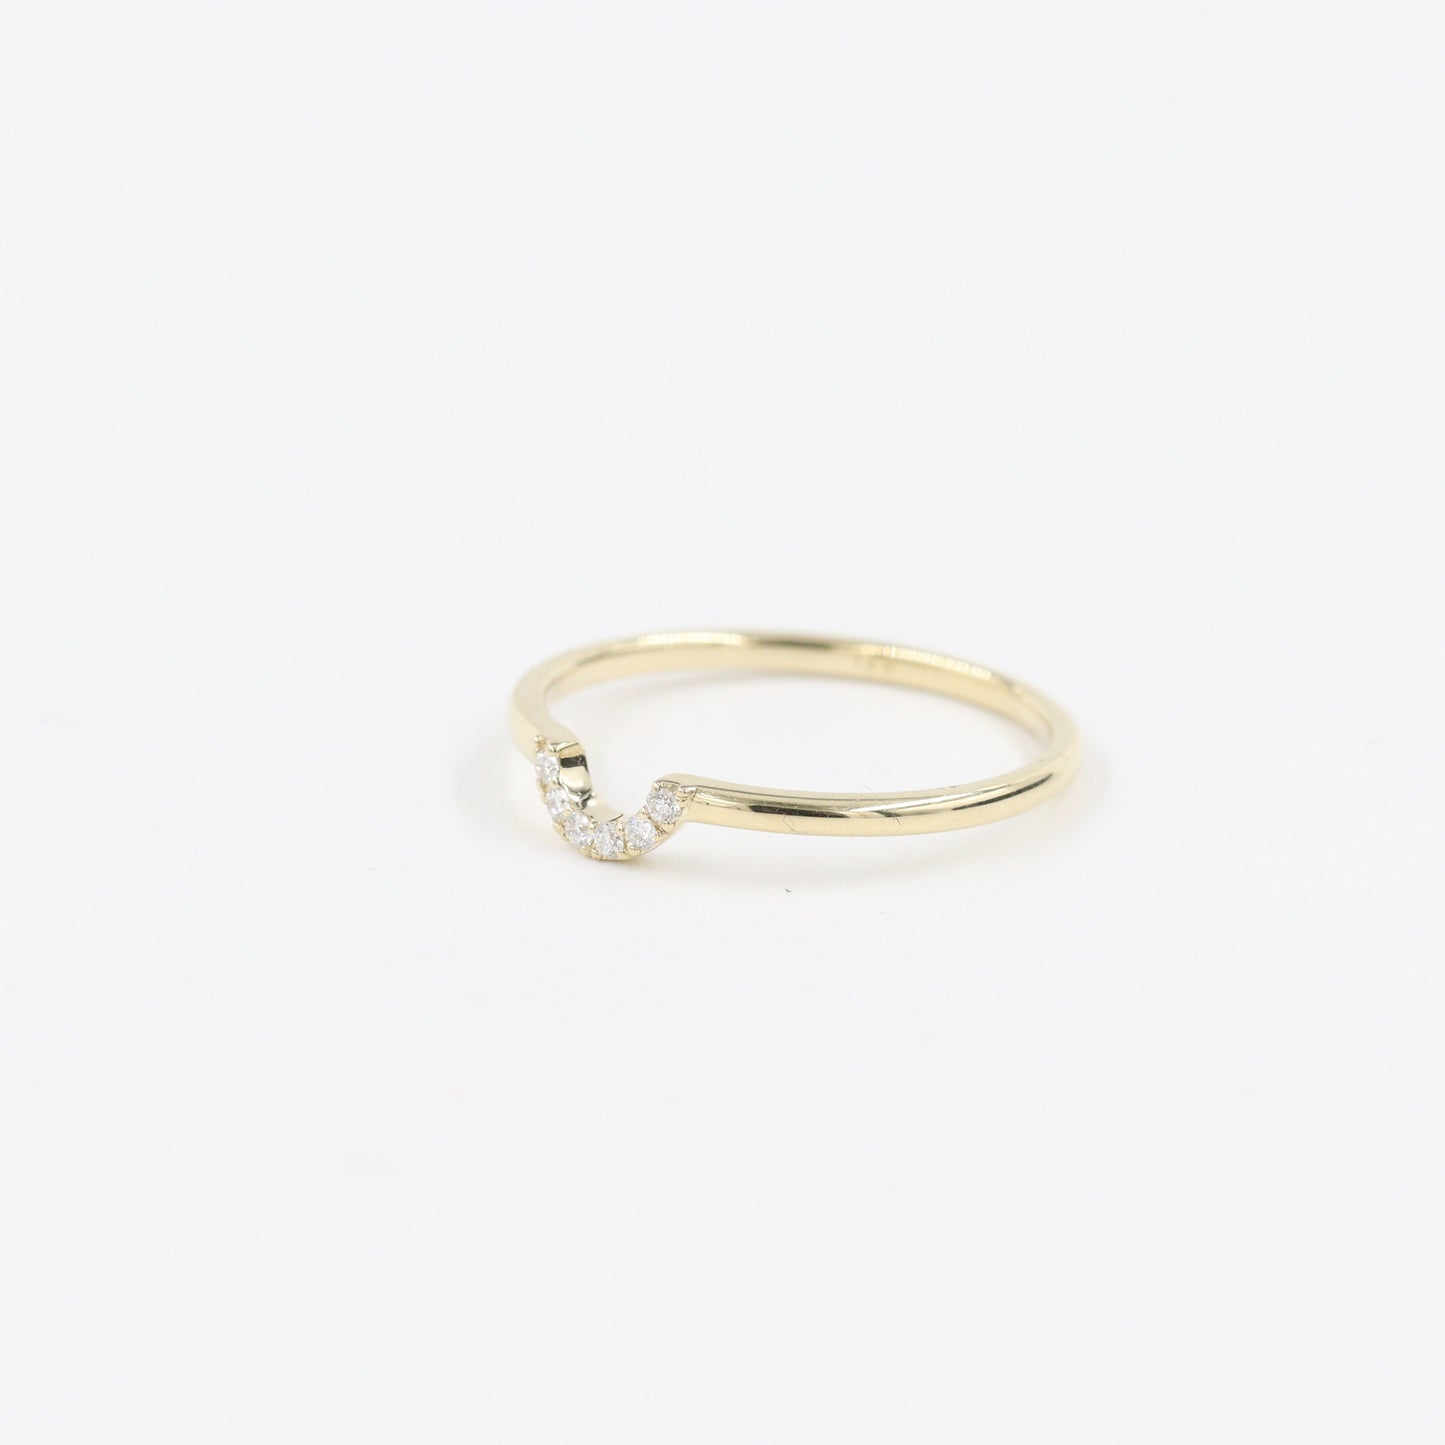 Mini U-shape Diamond Pave Ring / Stackable Ring